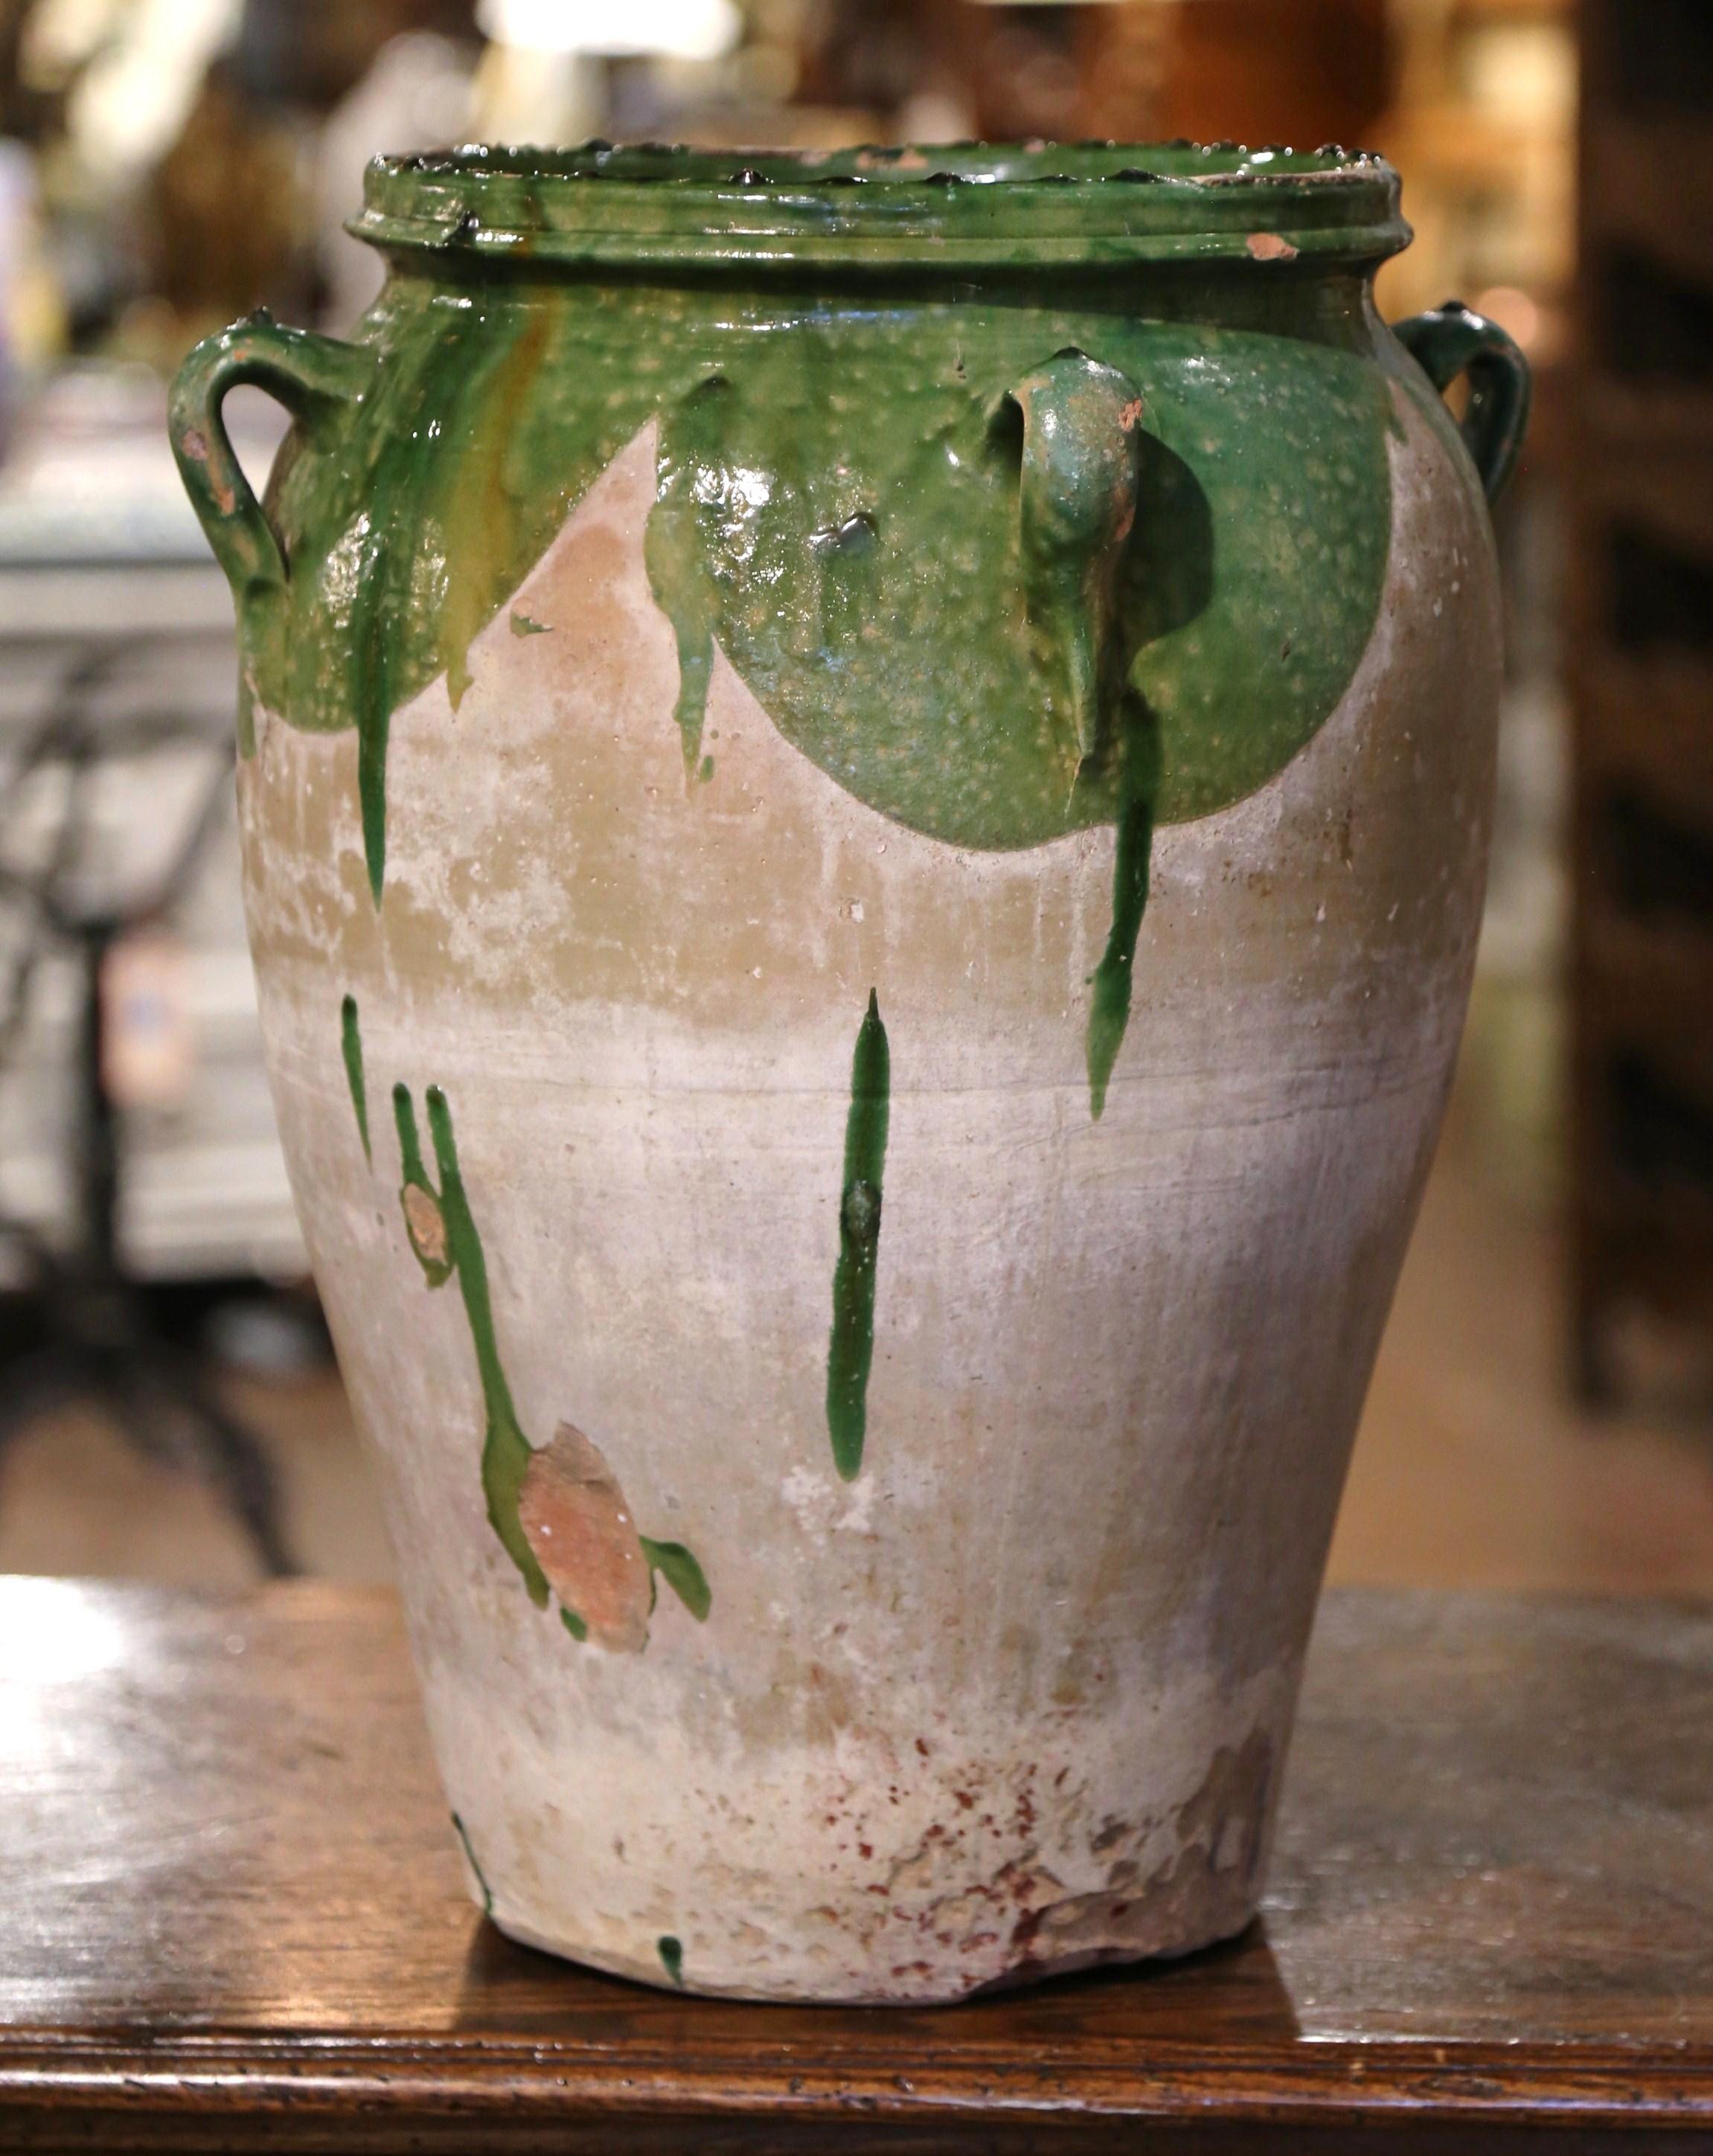 Dieser antike Olivenkrug aus Steingut wurde um 1780 in Südfrankreich hergestellt. Die Terrakotta-Vase aus blondem Ton hat eine traditionelle runde, bauchige Form und ist an der Schulter mit vier Henkeln versehen. Die rustikale, von der Zeit